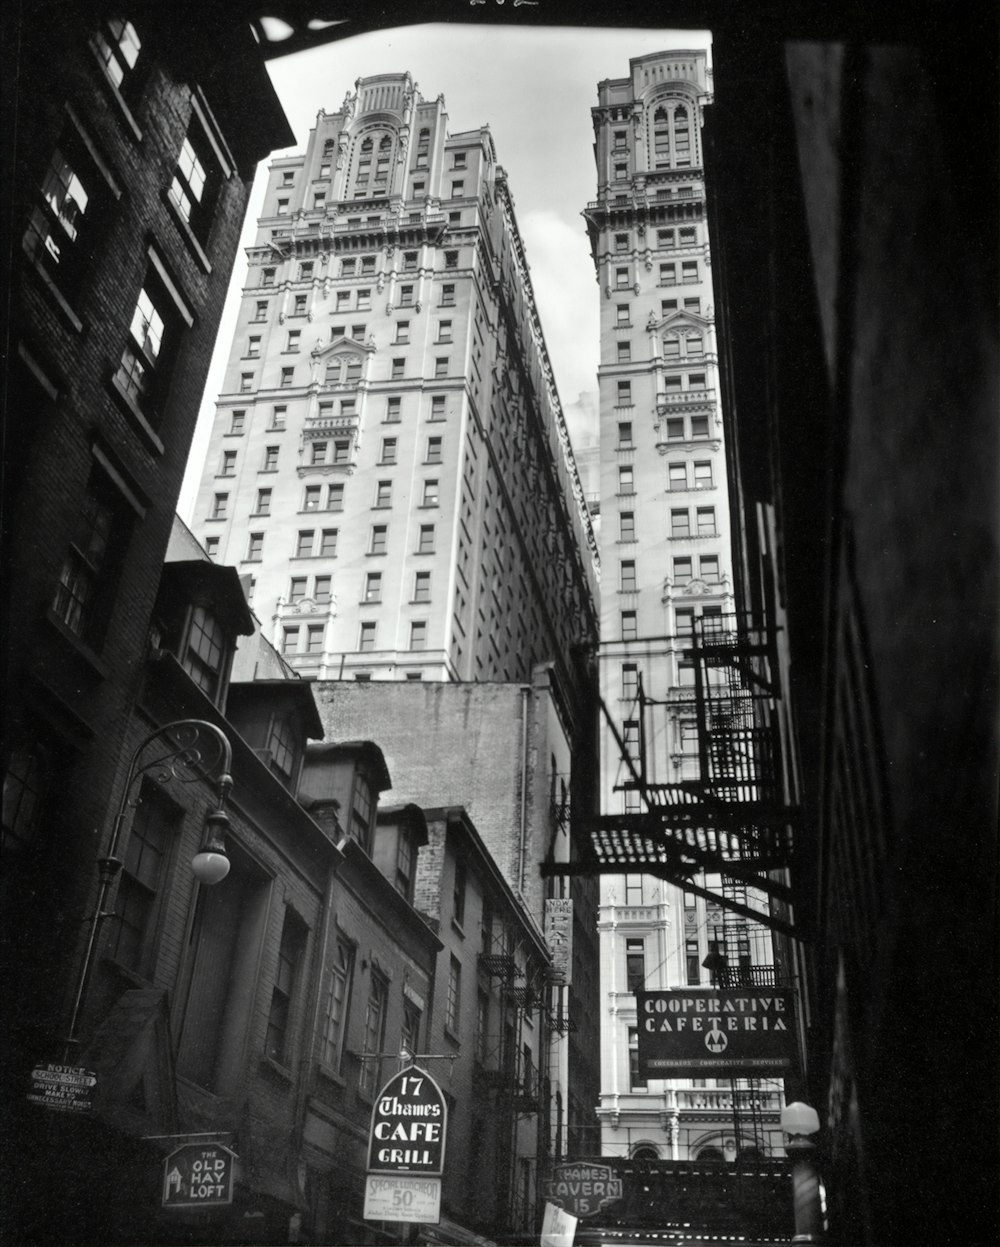 photo en niveaux de gris d’immeubles de grande hauteur à Manhattan